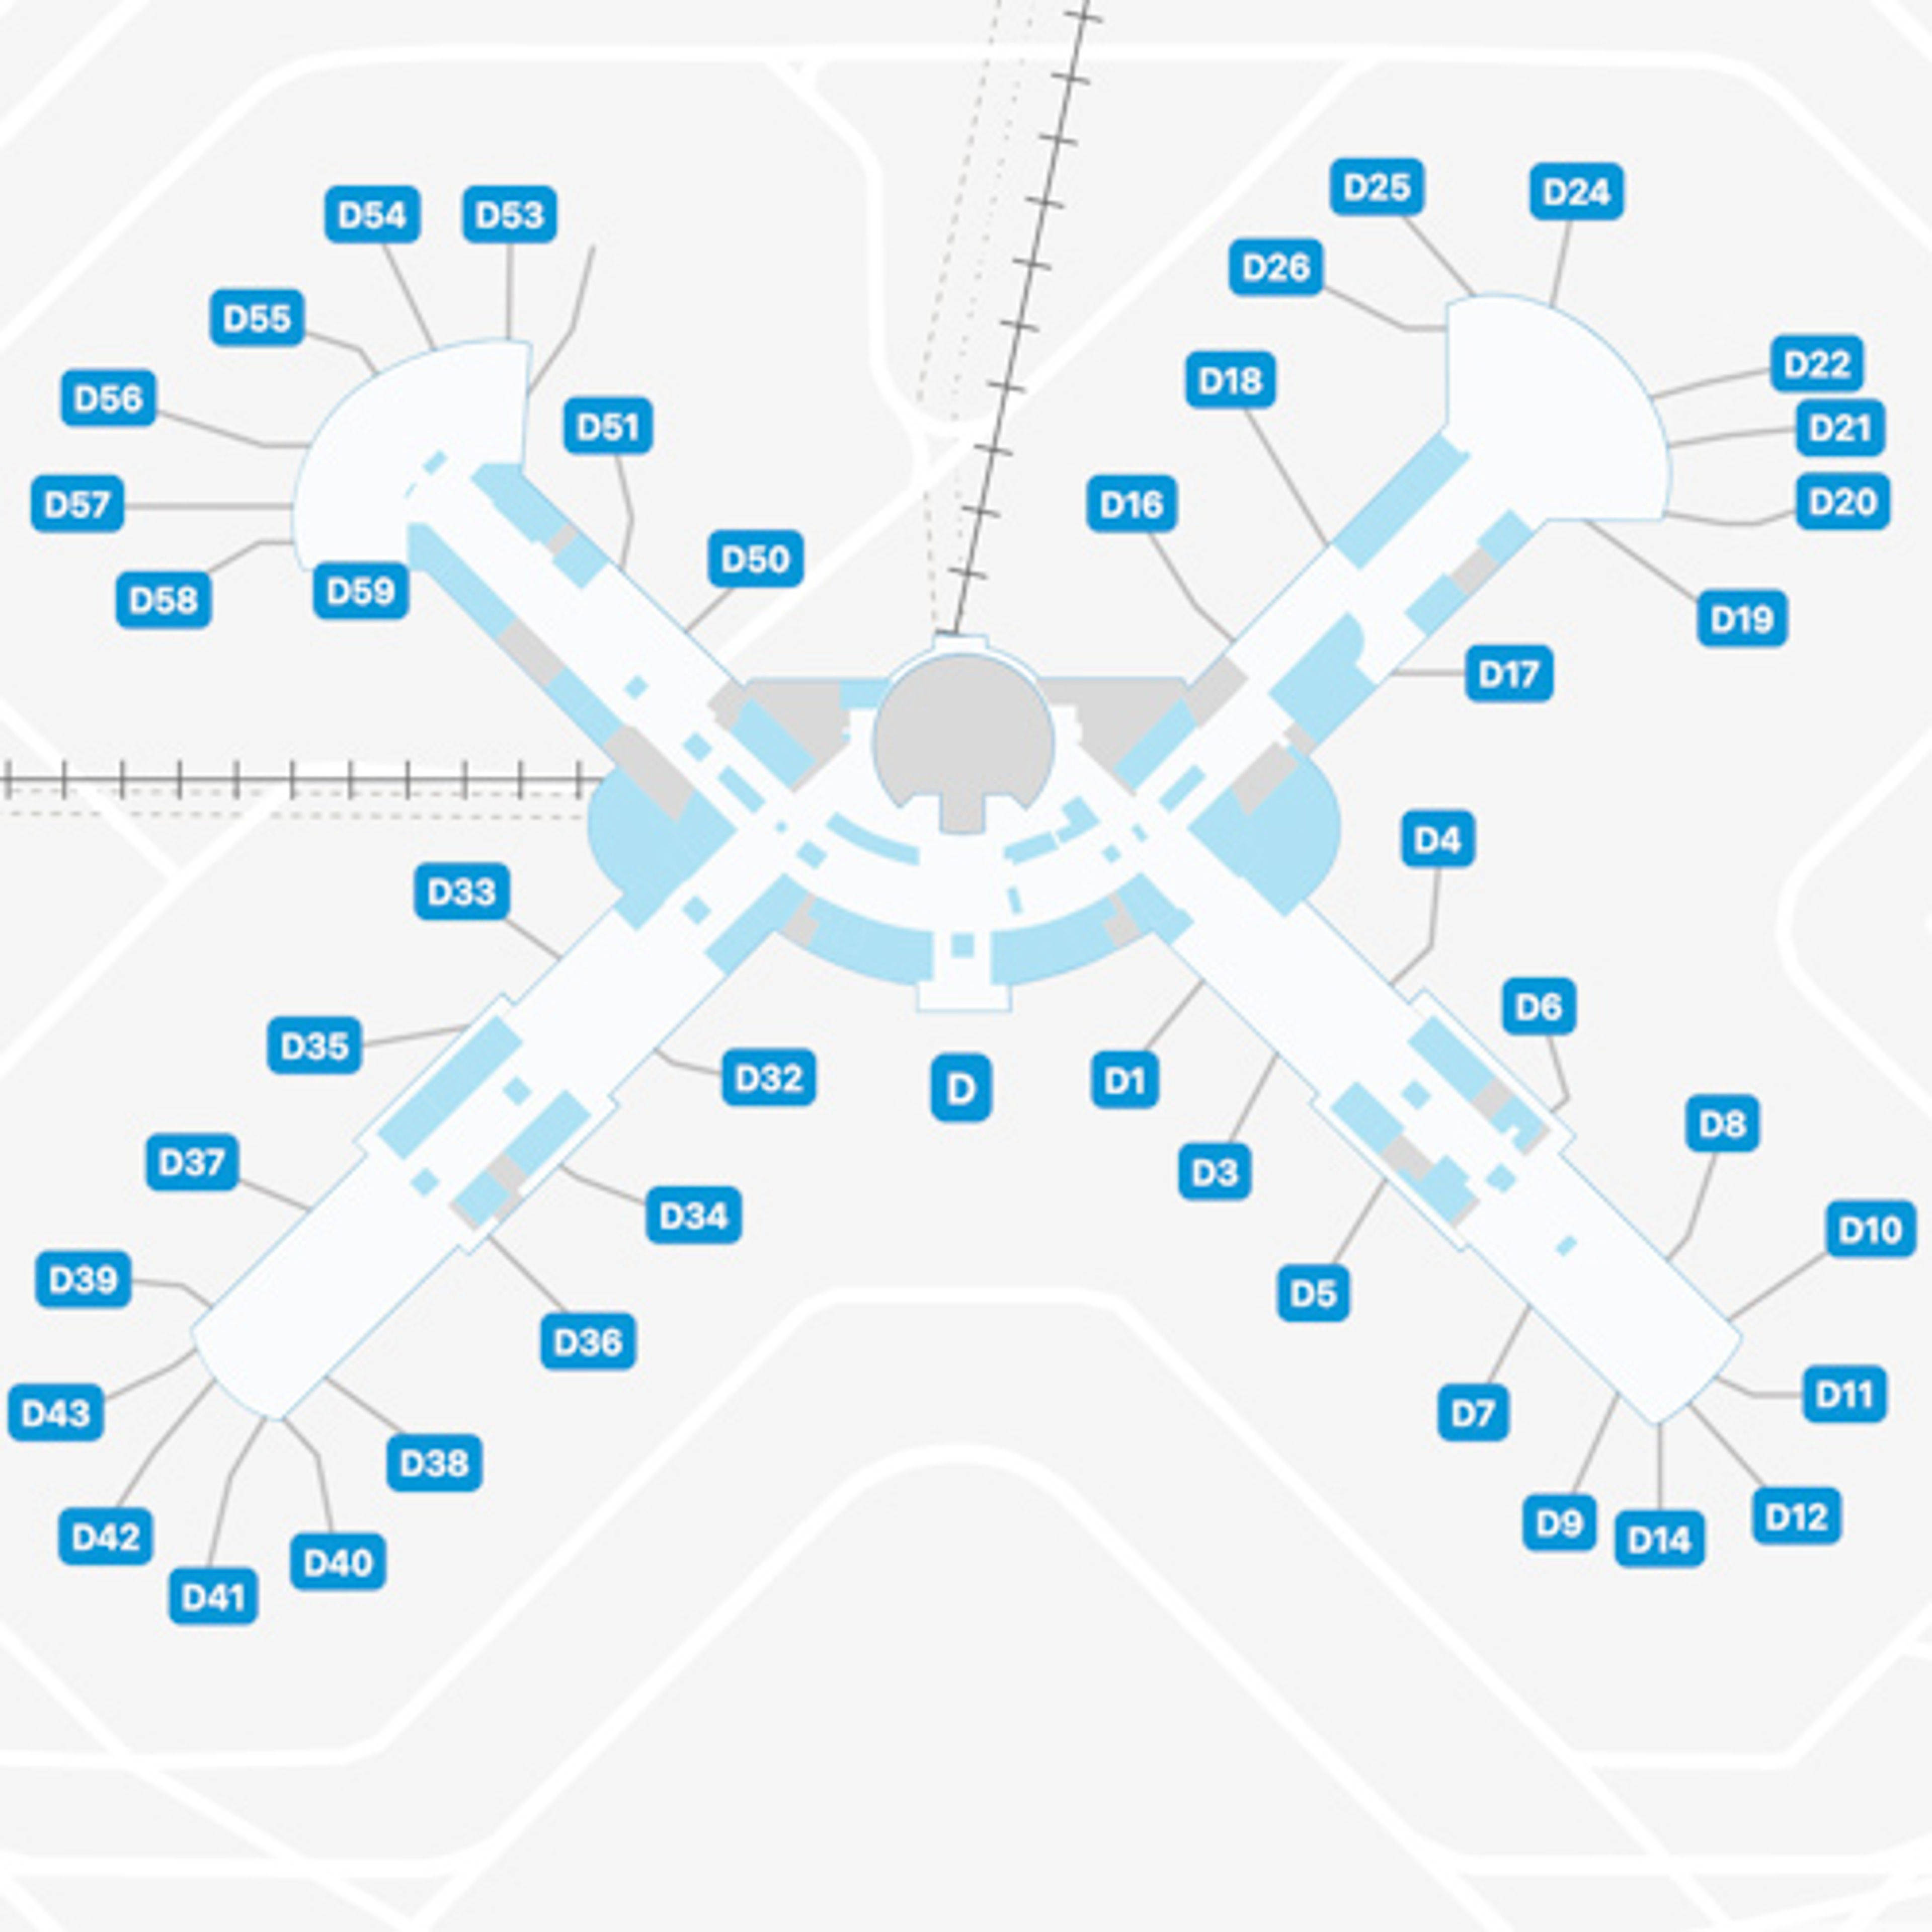 LAS Concourse D Map